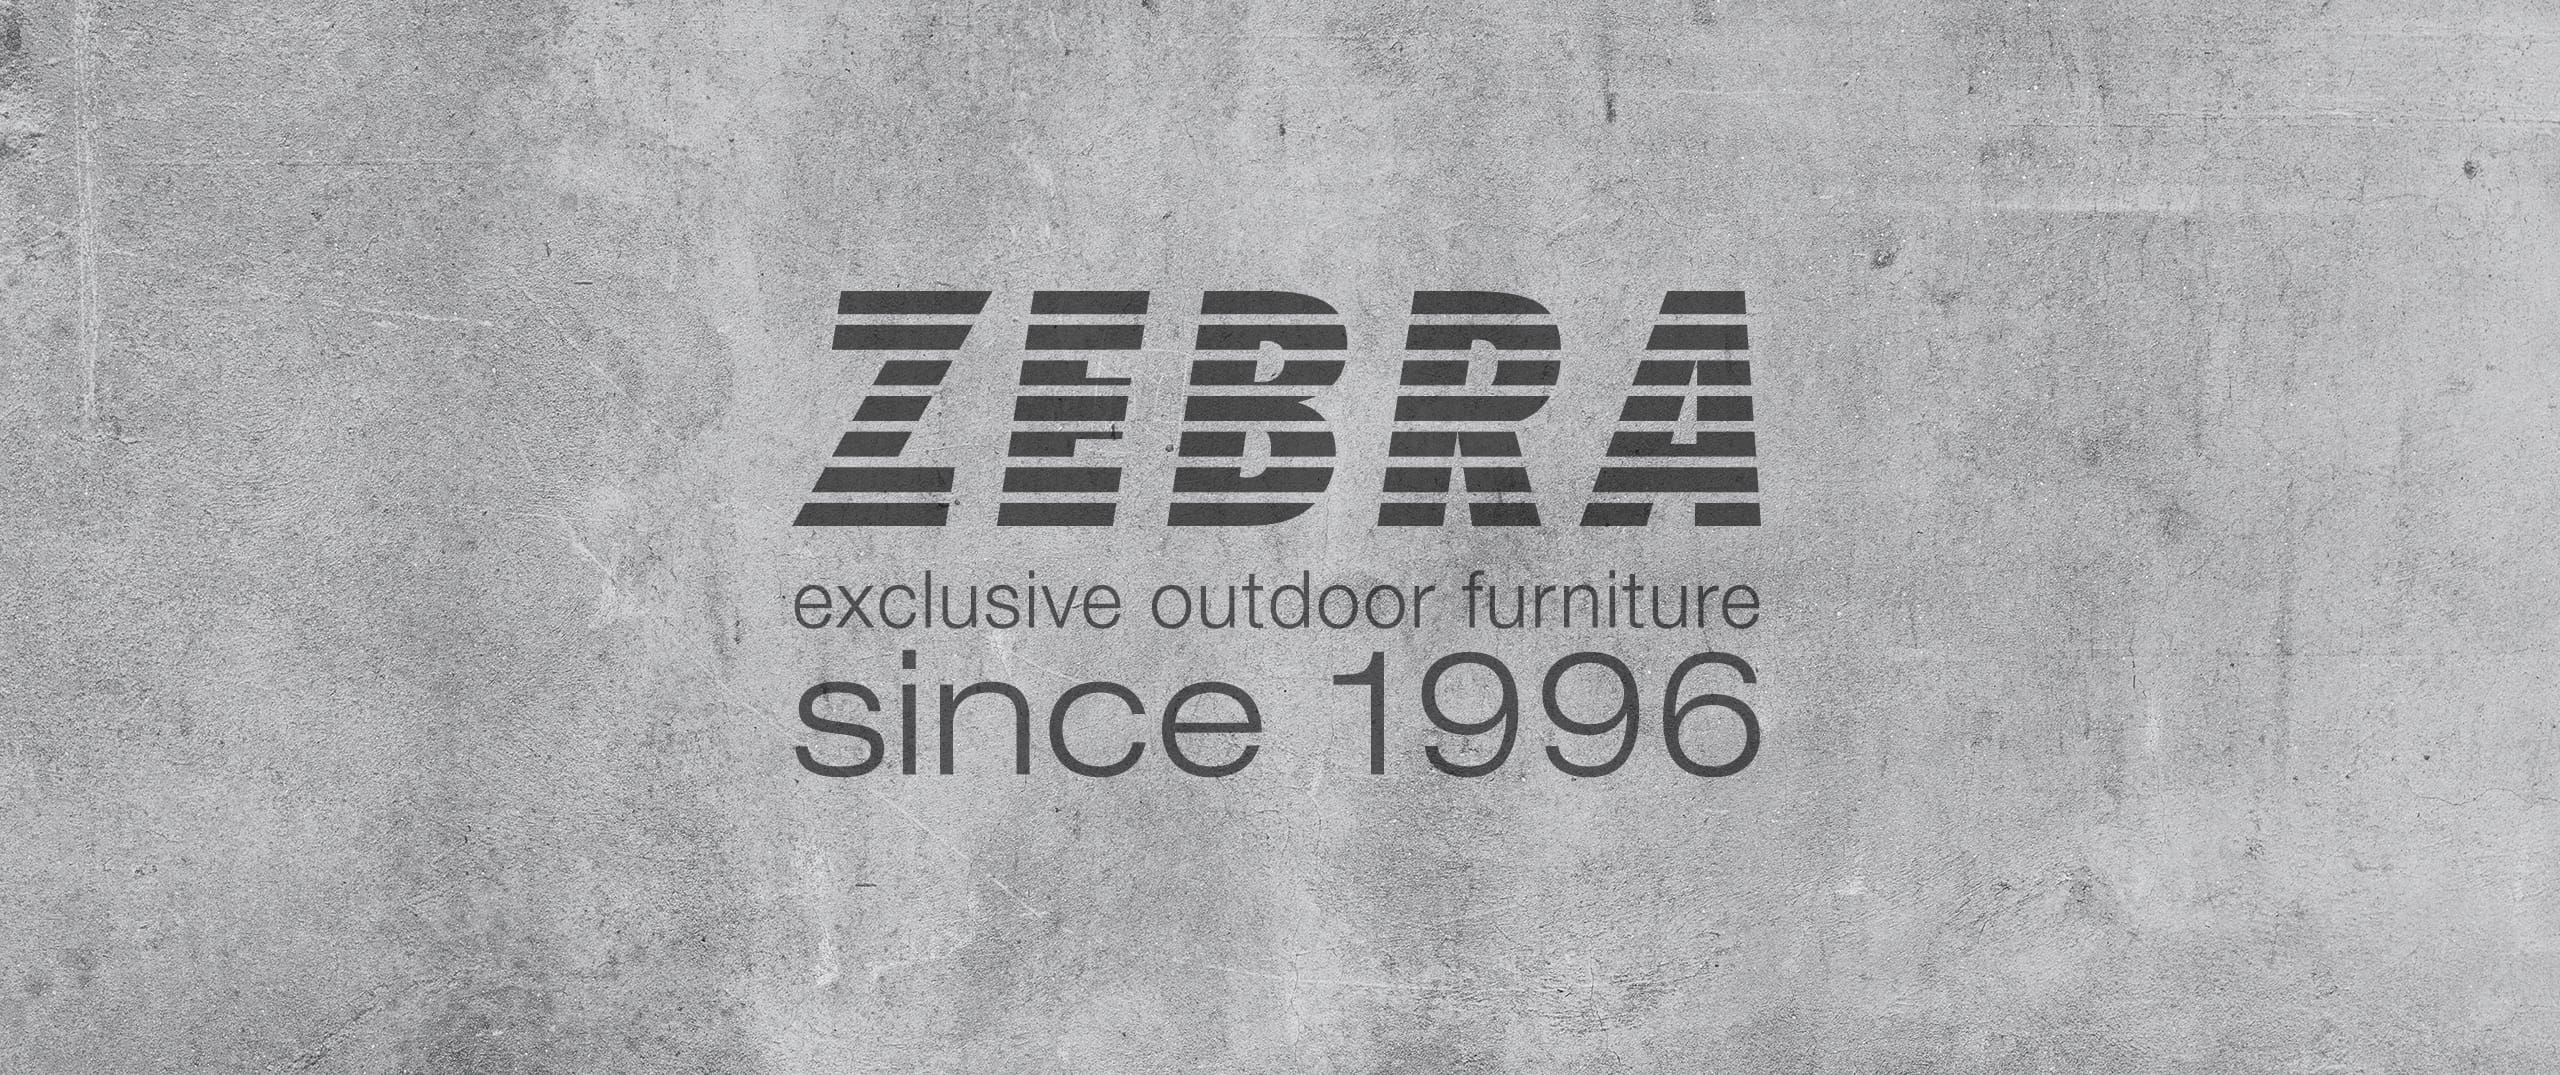 ZEBRA exclusive outdoor furniture